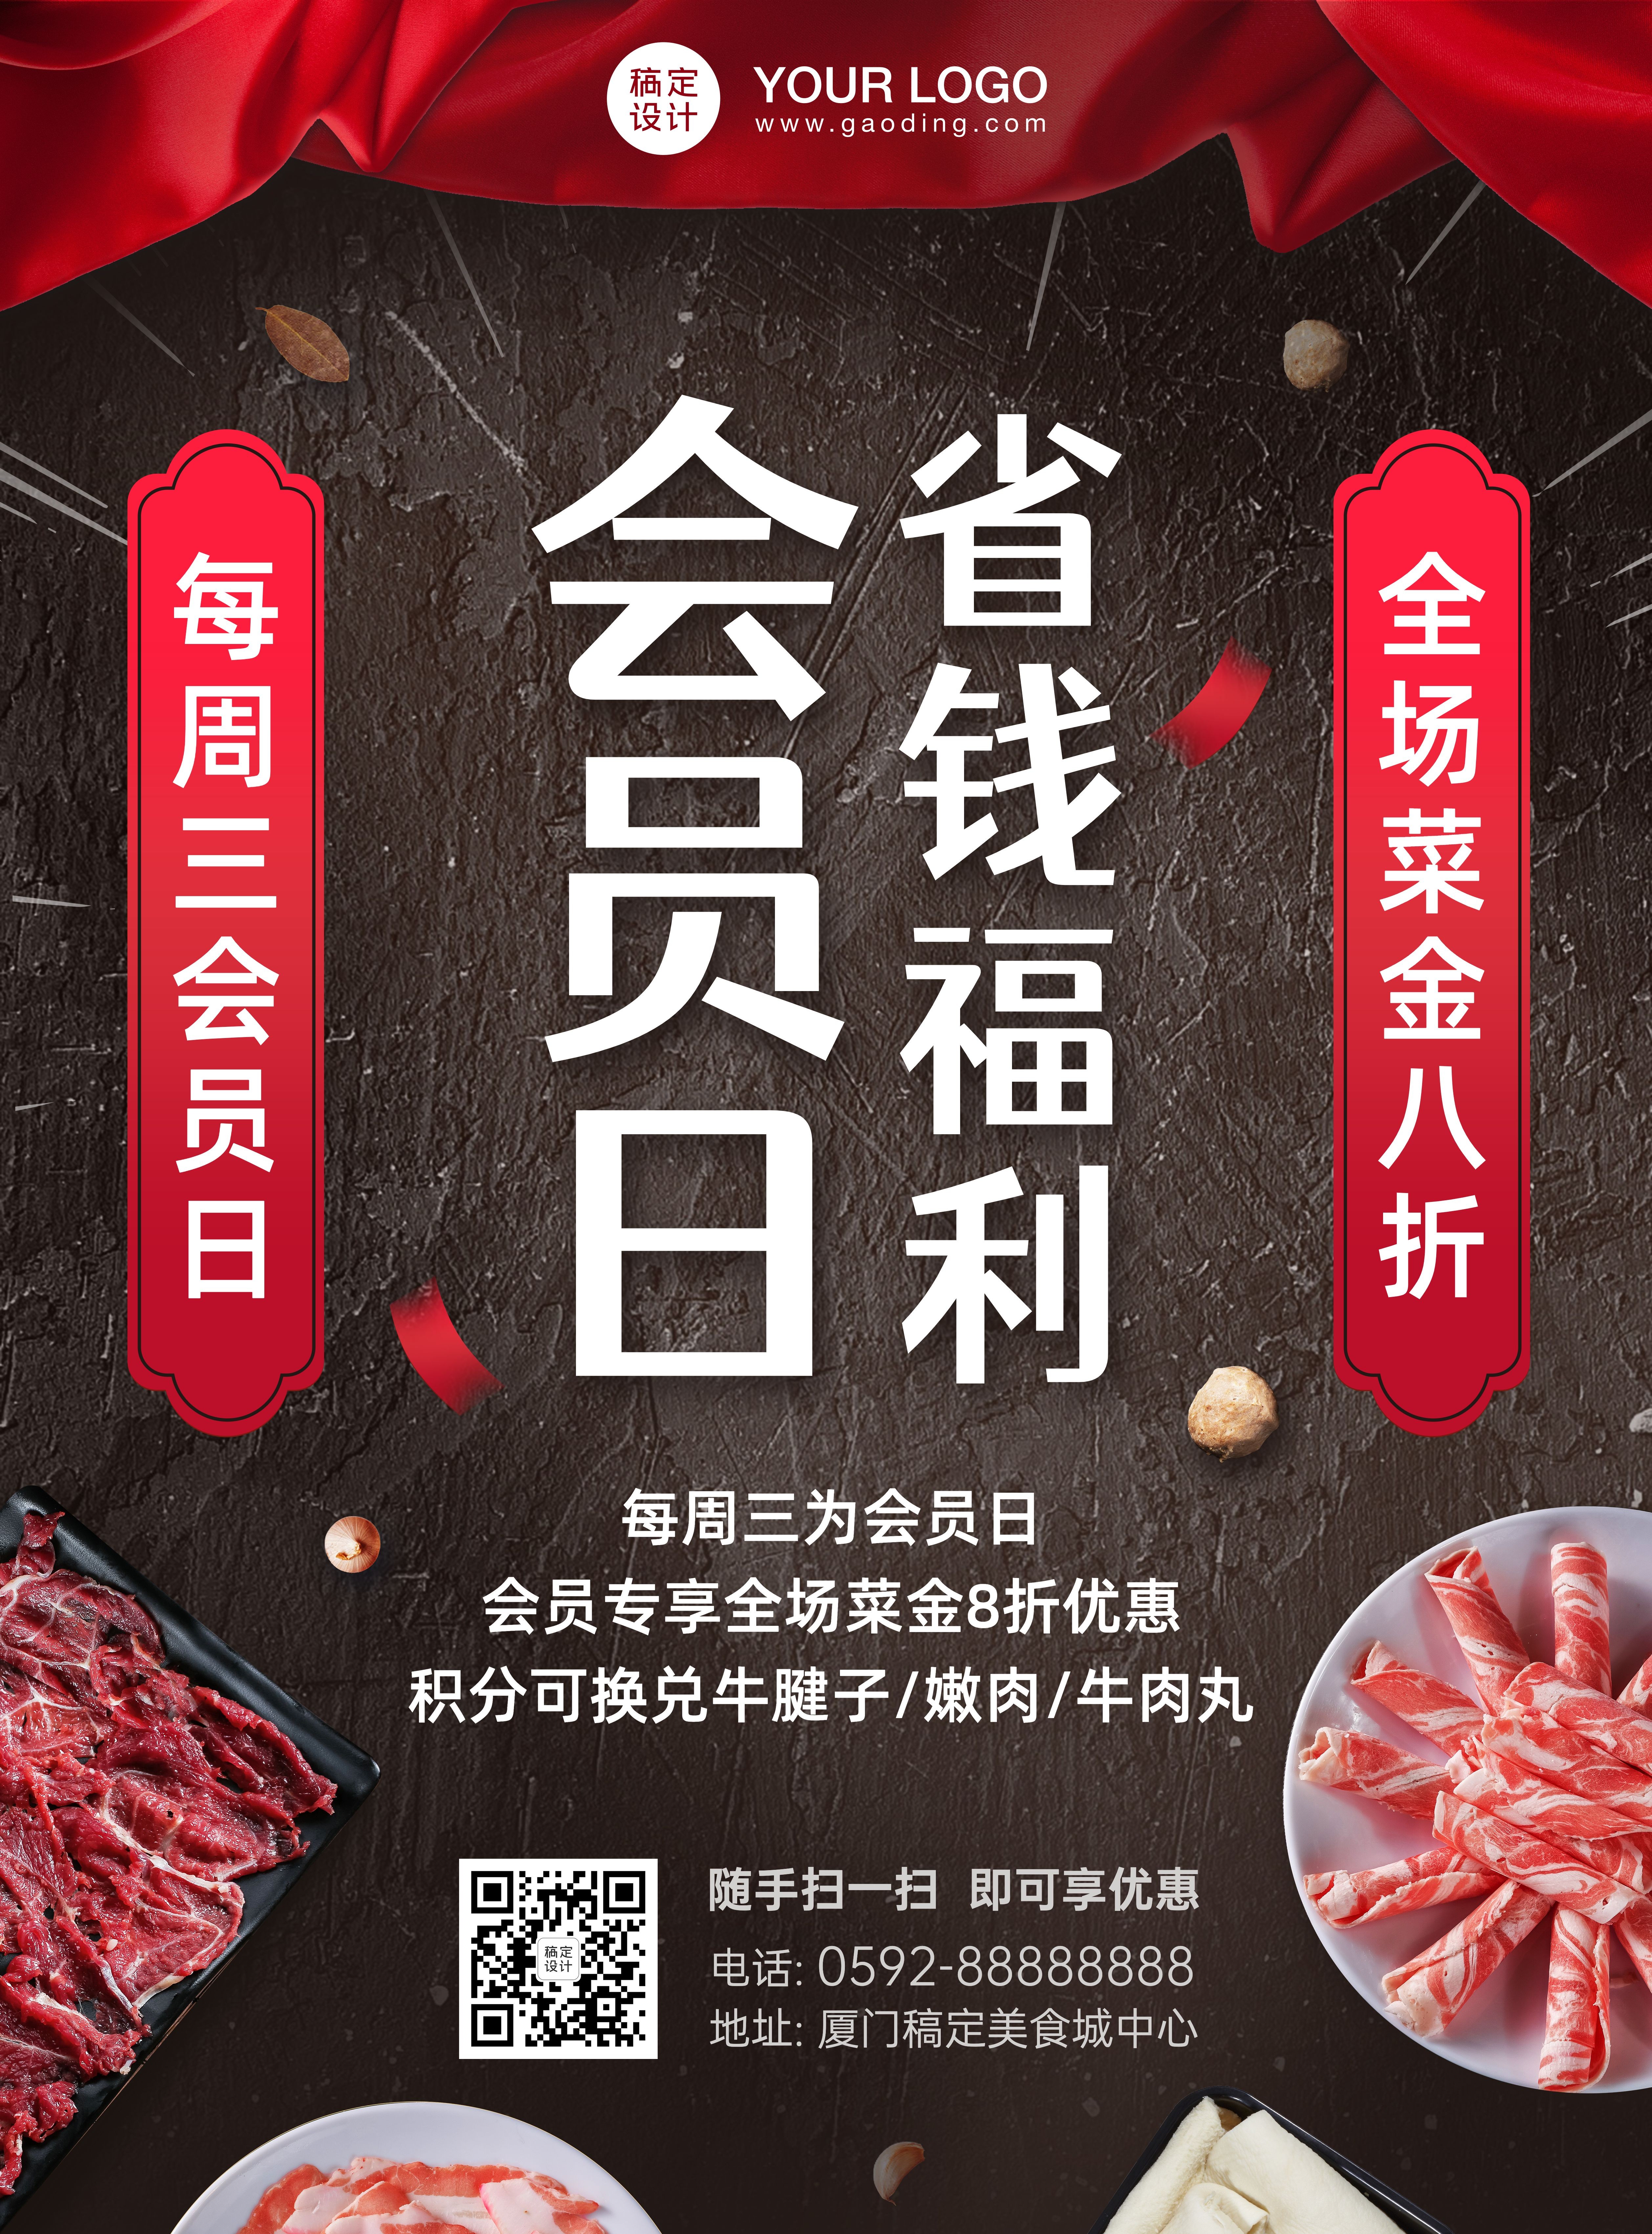 餐饮潮汕牛肉火锅会员活动张贴海报预览效果